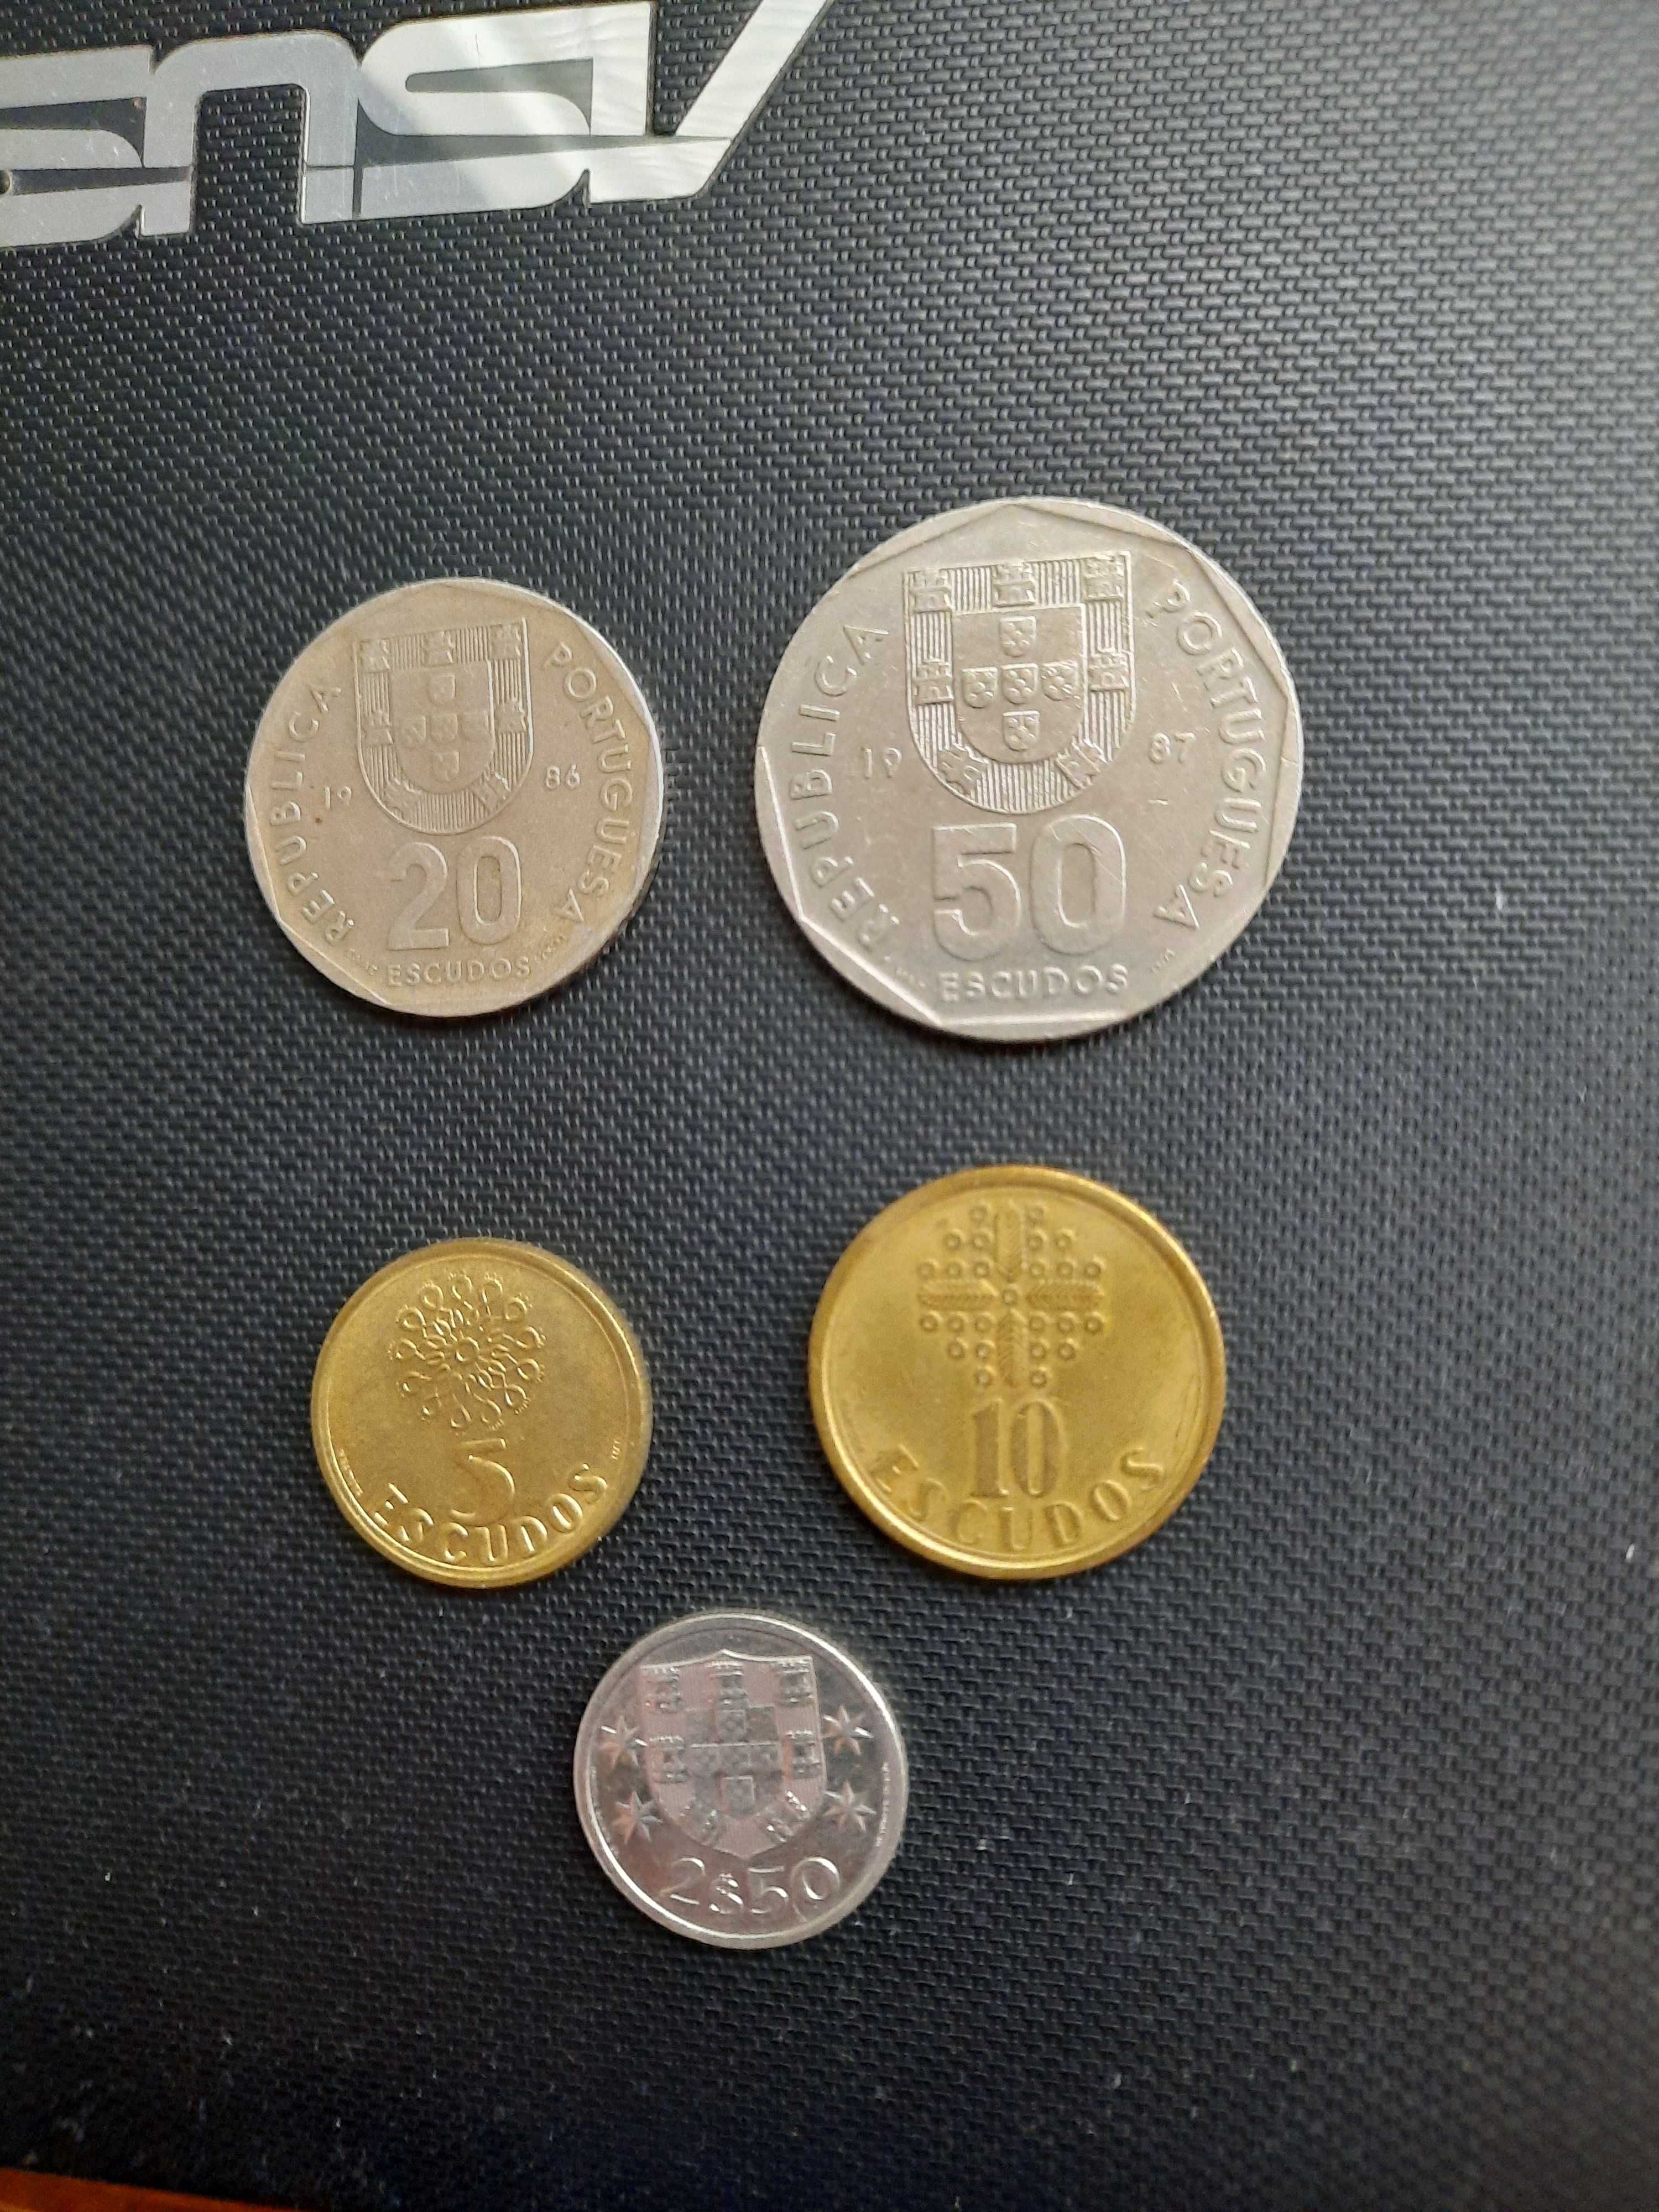 Лот монети Португалия